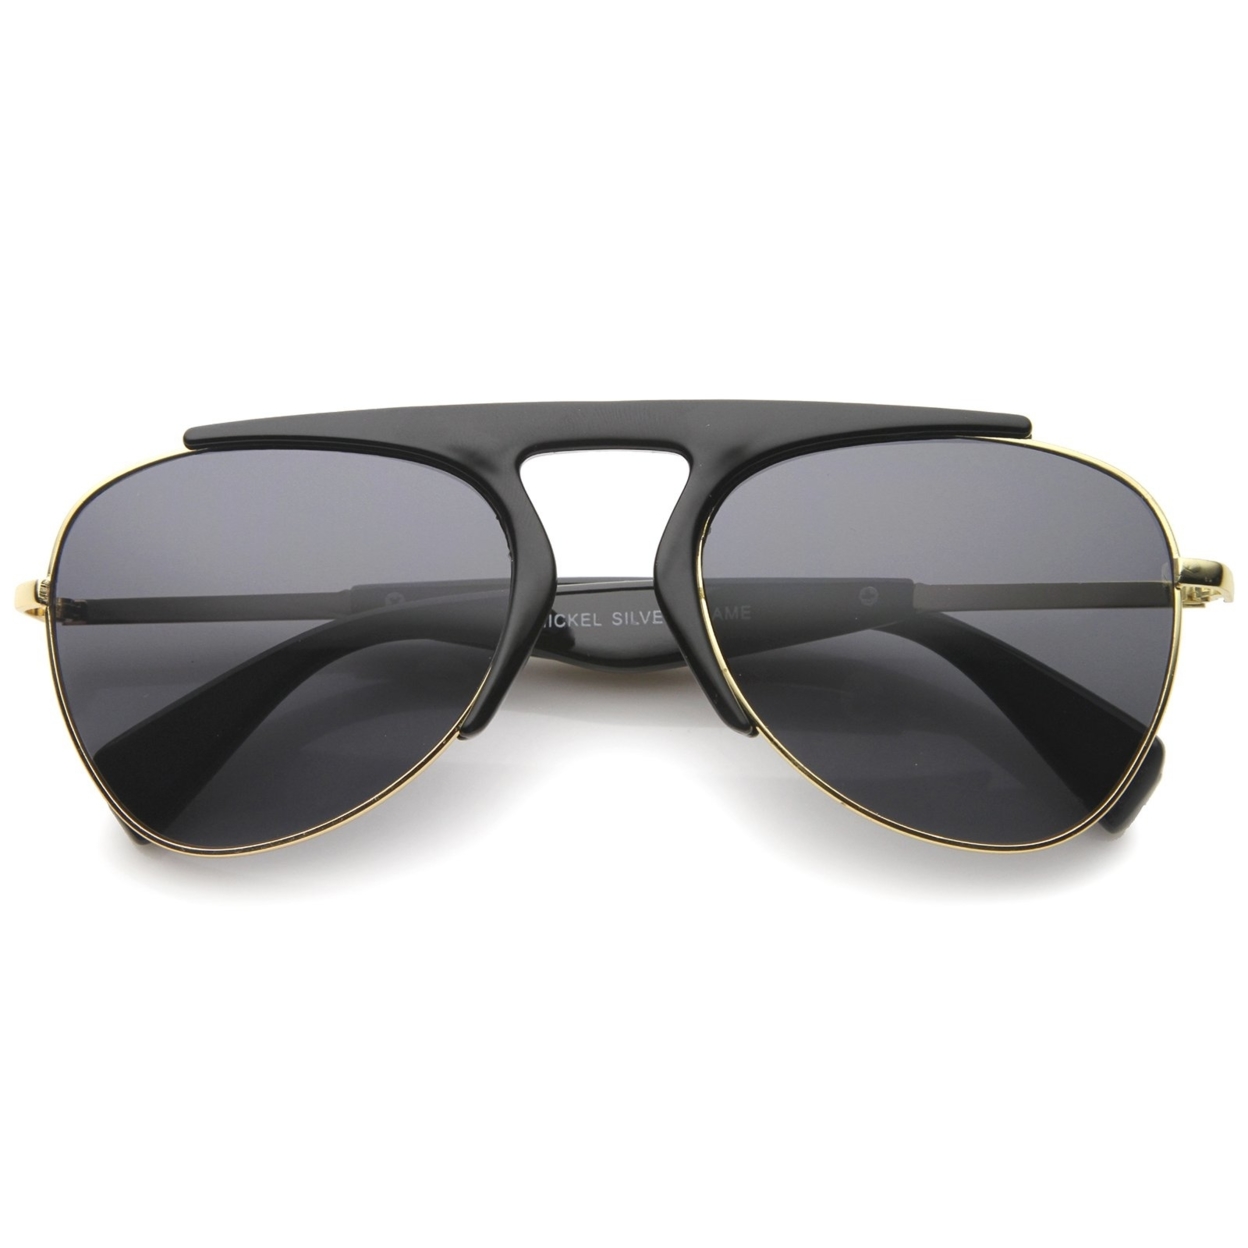 Modern Oversize Semi-Rimless Frame Teardrop Lens Aviator Sunglasses 57mm - Tortoise-Gold / Brown